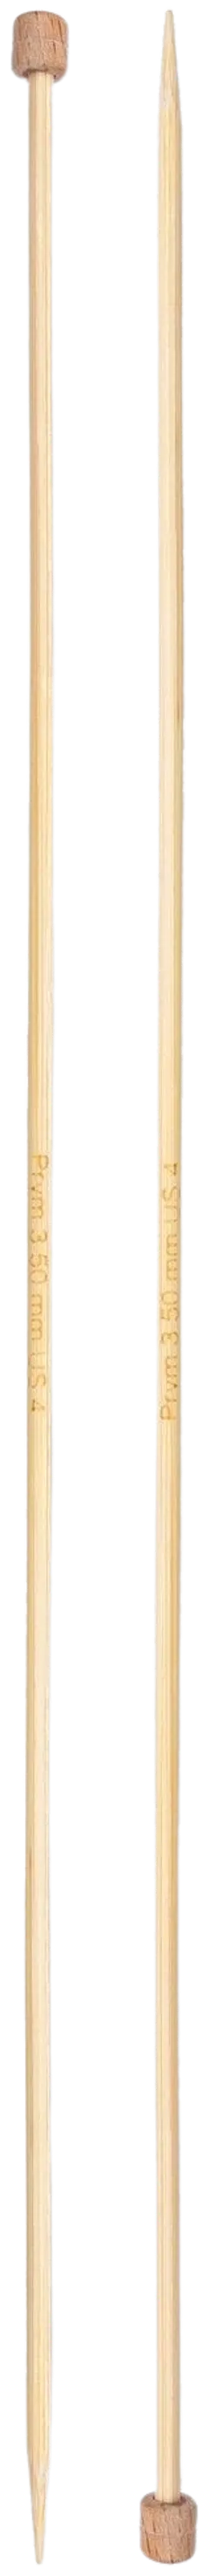 Prym neulepuikko 3,5 33cm bambu - 2